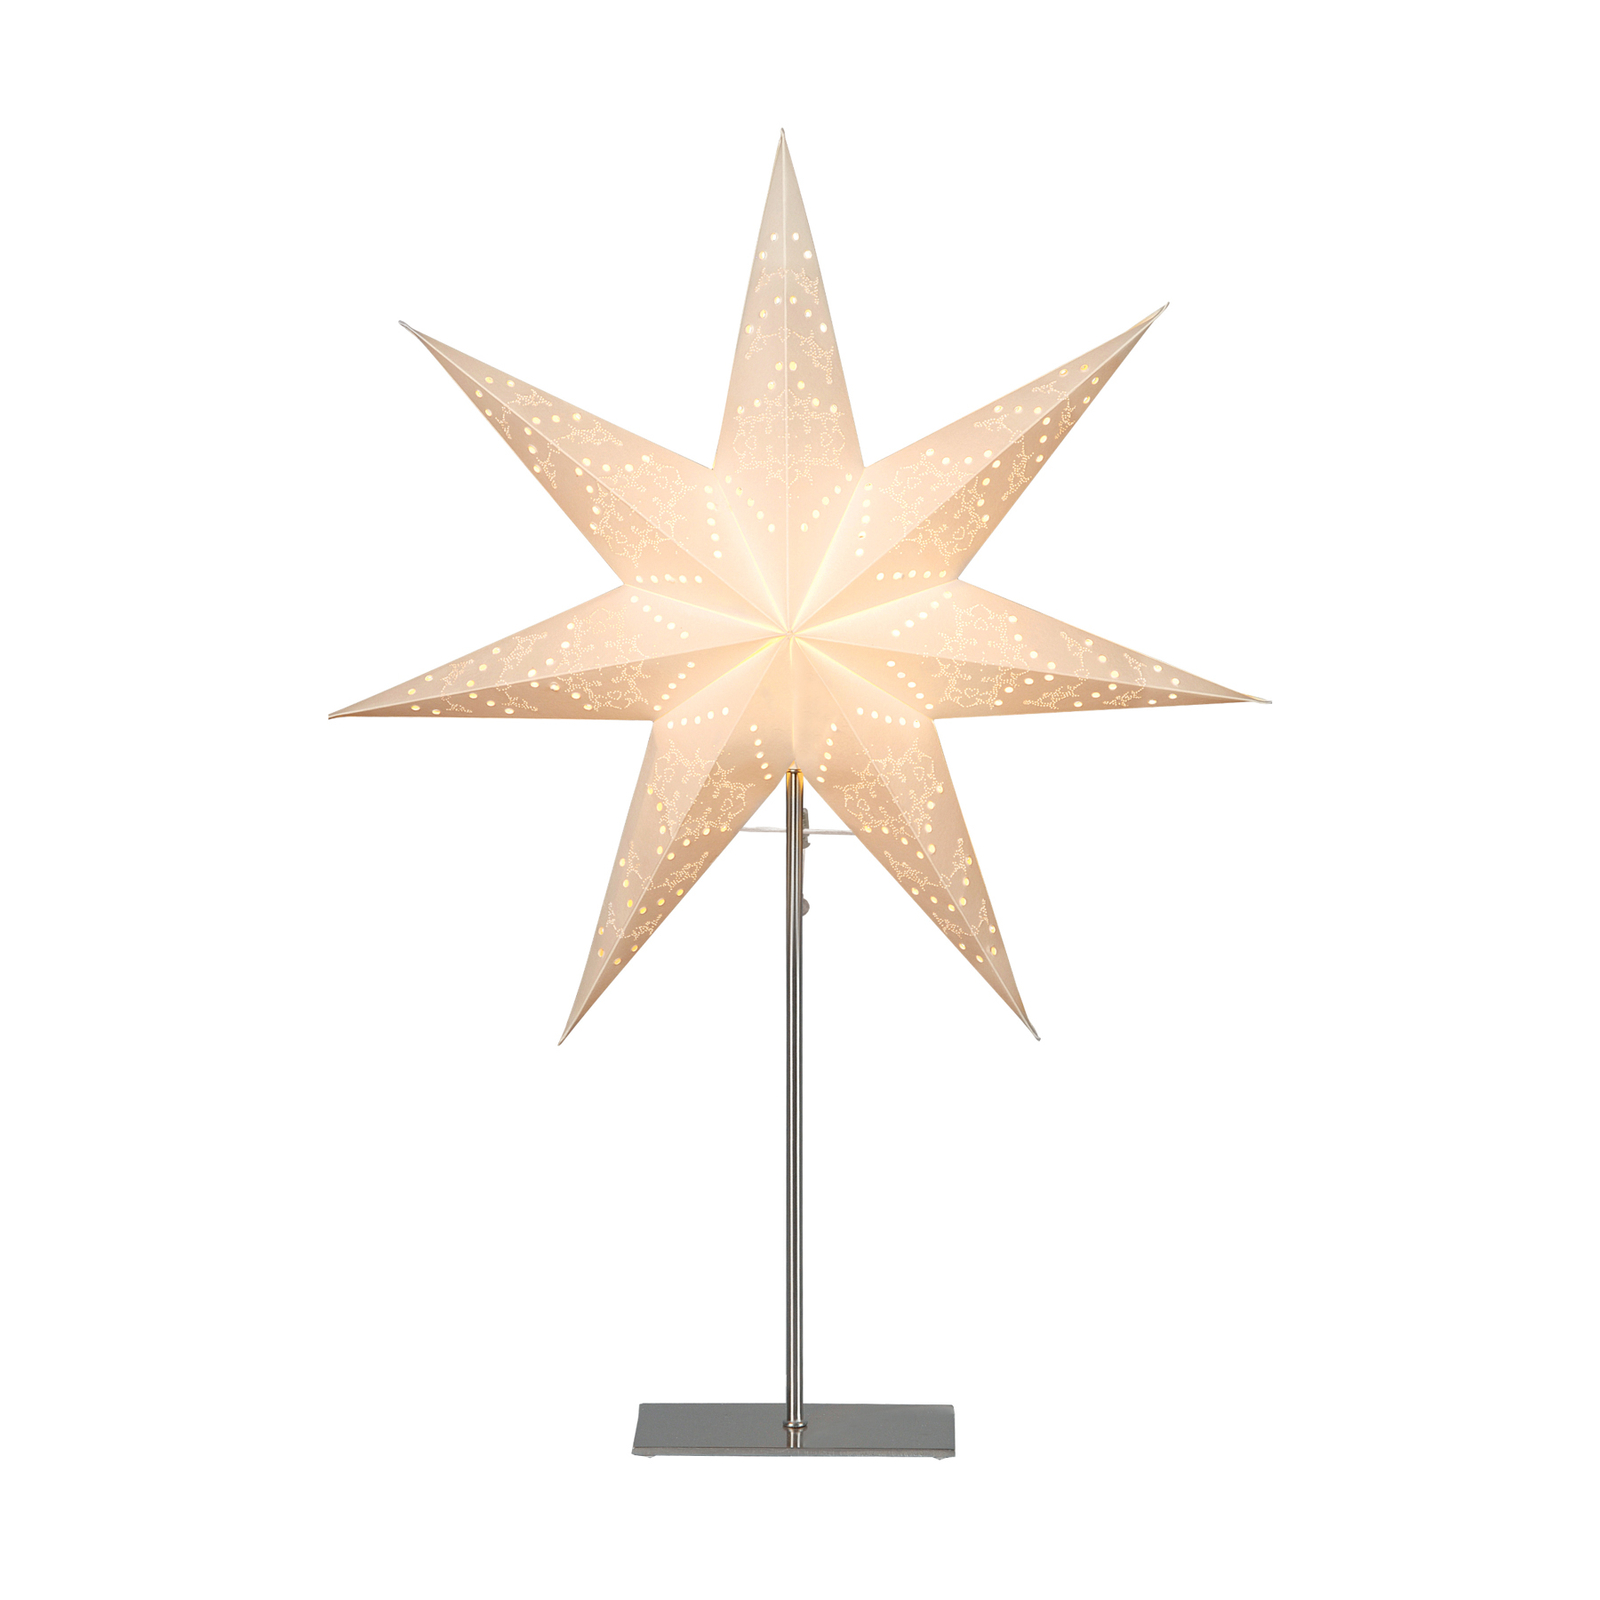 Tähti Sensy seisova, korkeus 78 cm, valkoinen